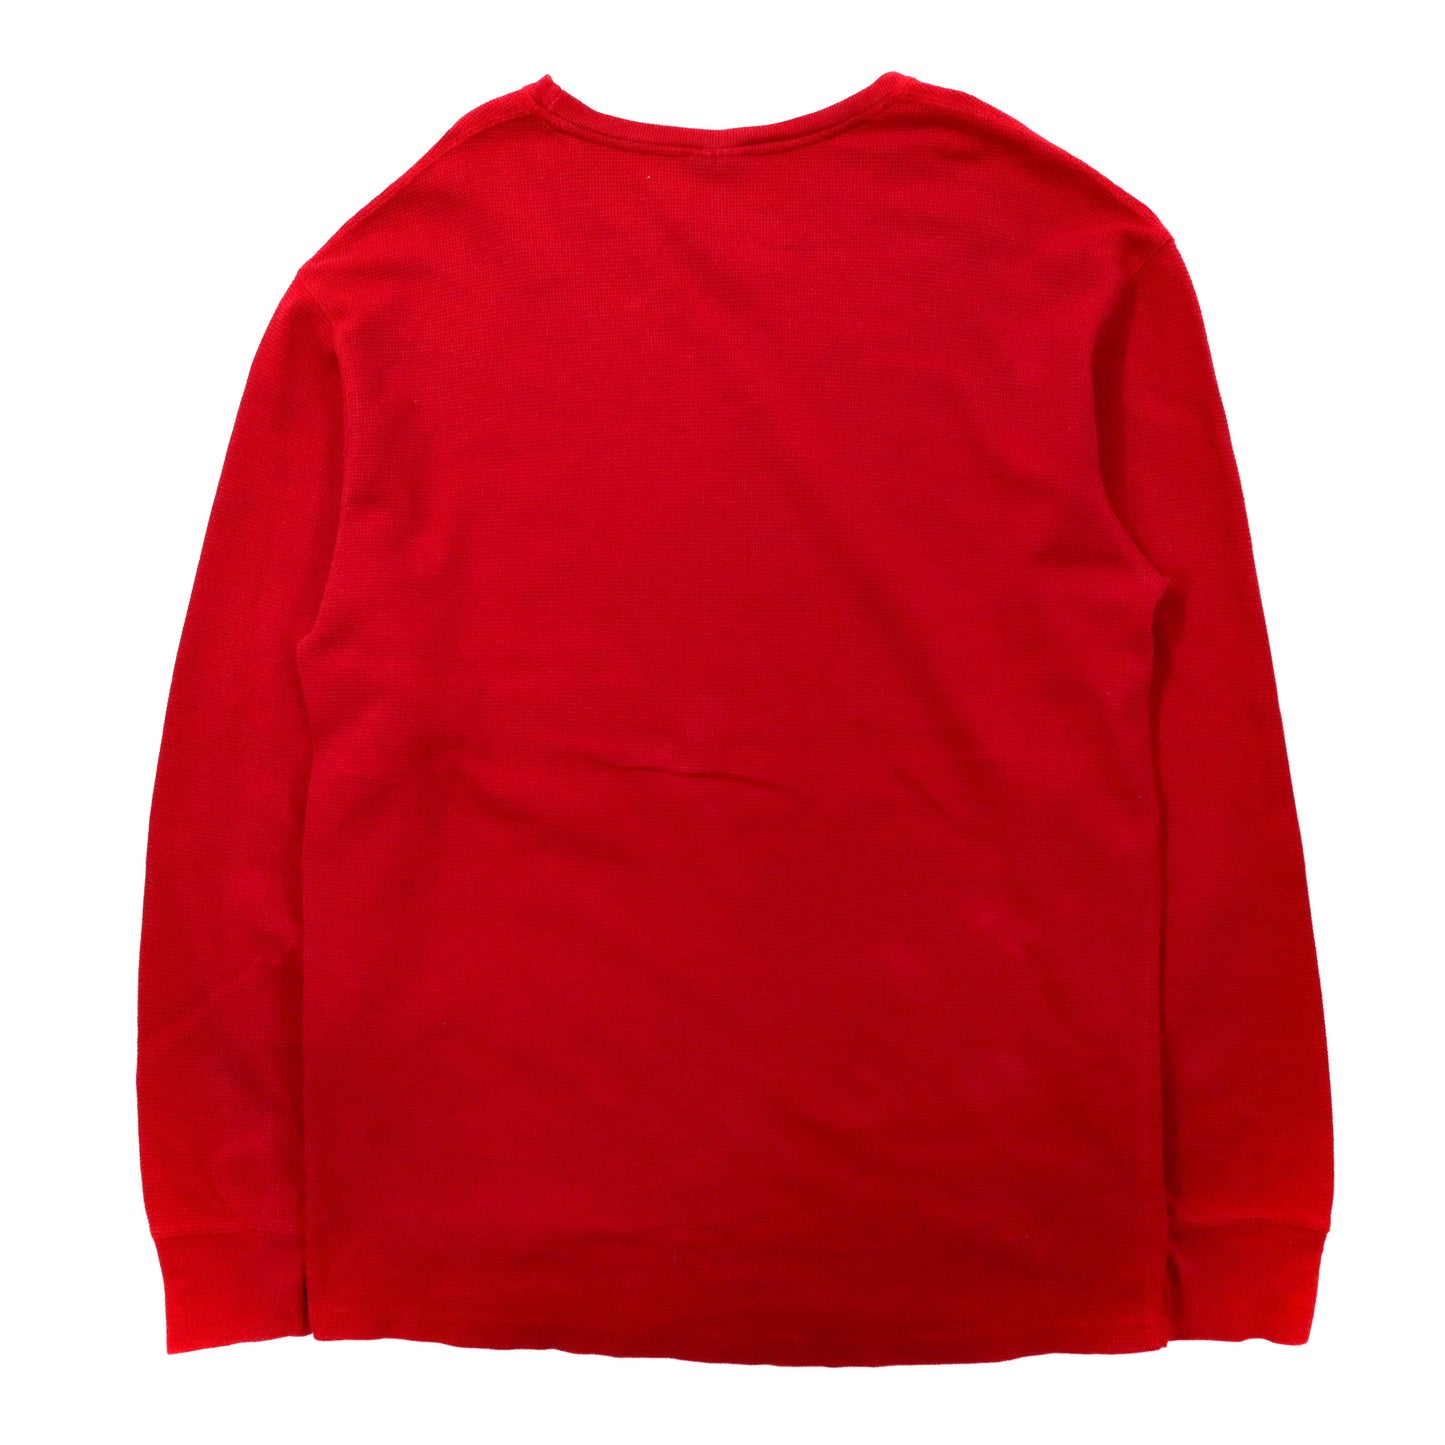 POLO RALPH LAUREN ビッグサイズ サーマル ロングスリーブTシャツ 2XL レッド コットン パキ綿 スモールポニー刺繍